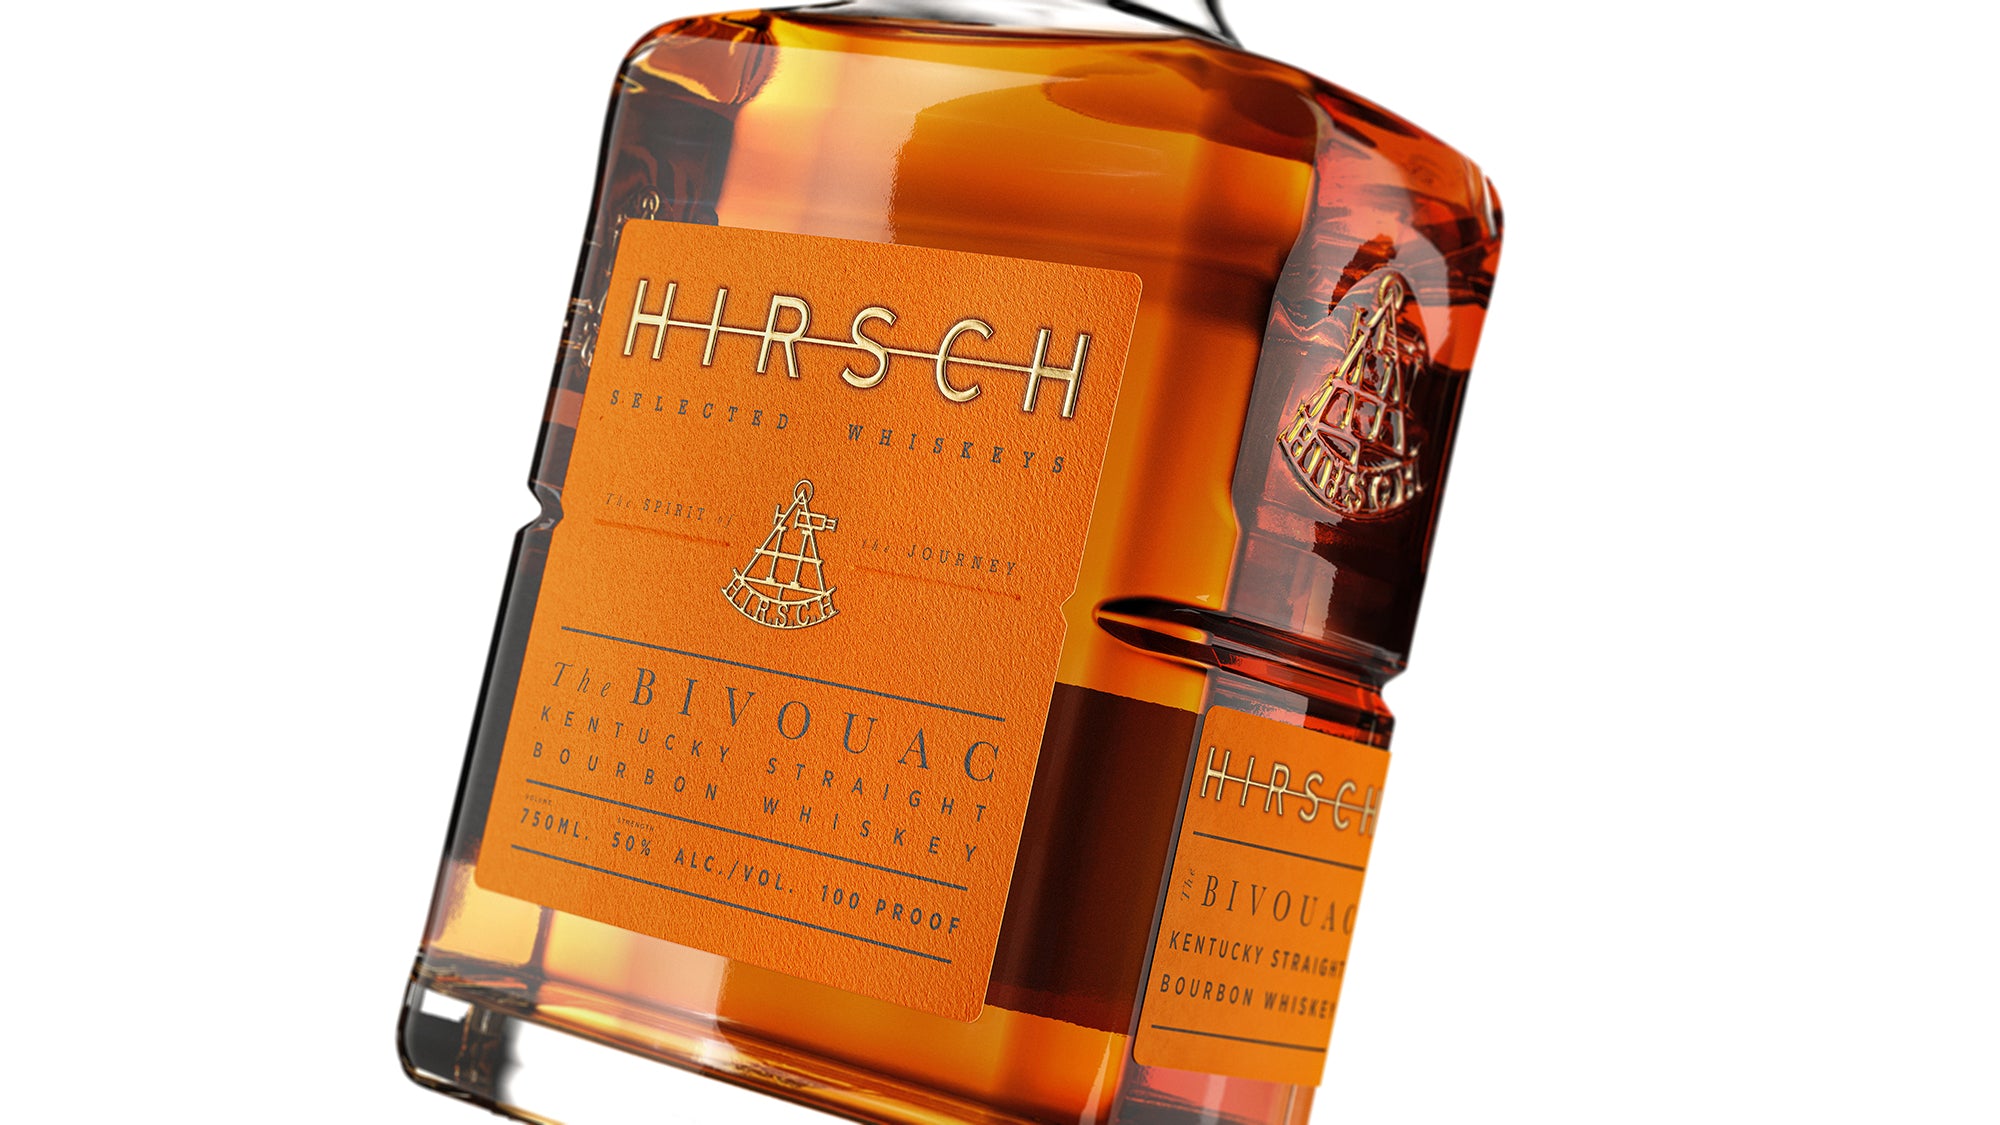 Hirsch The Bivouac Kentucky Bourbon